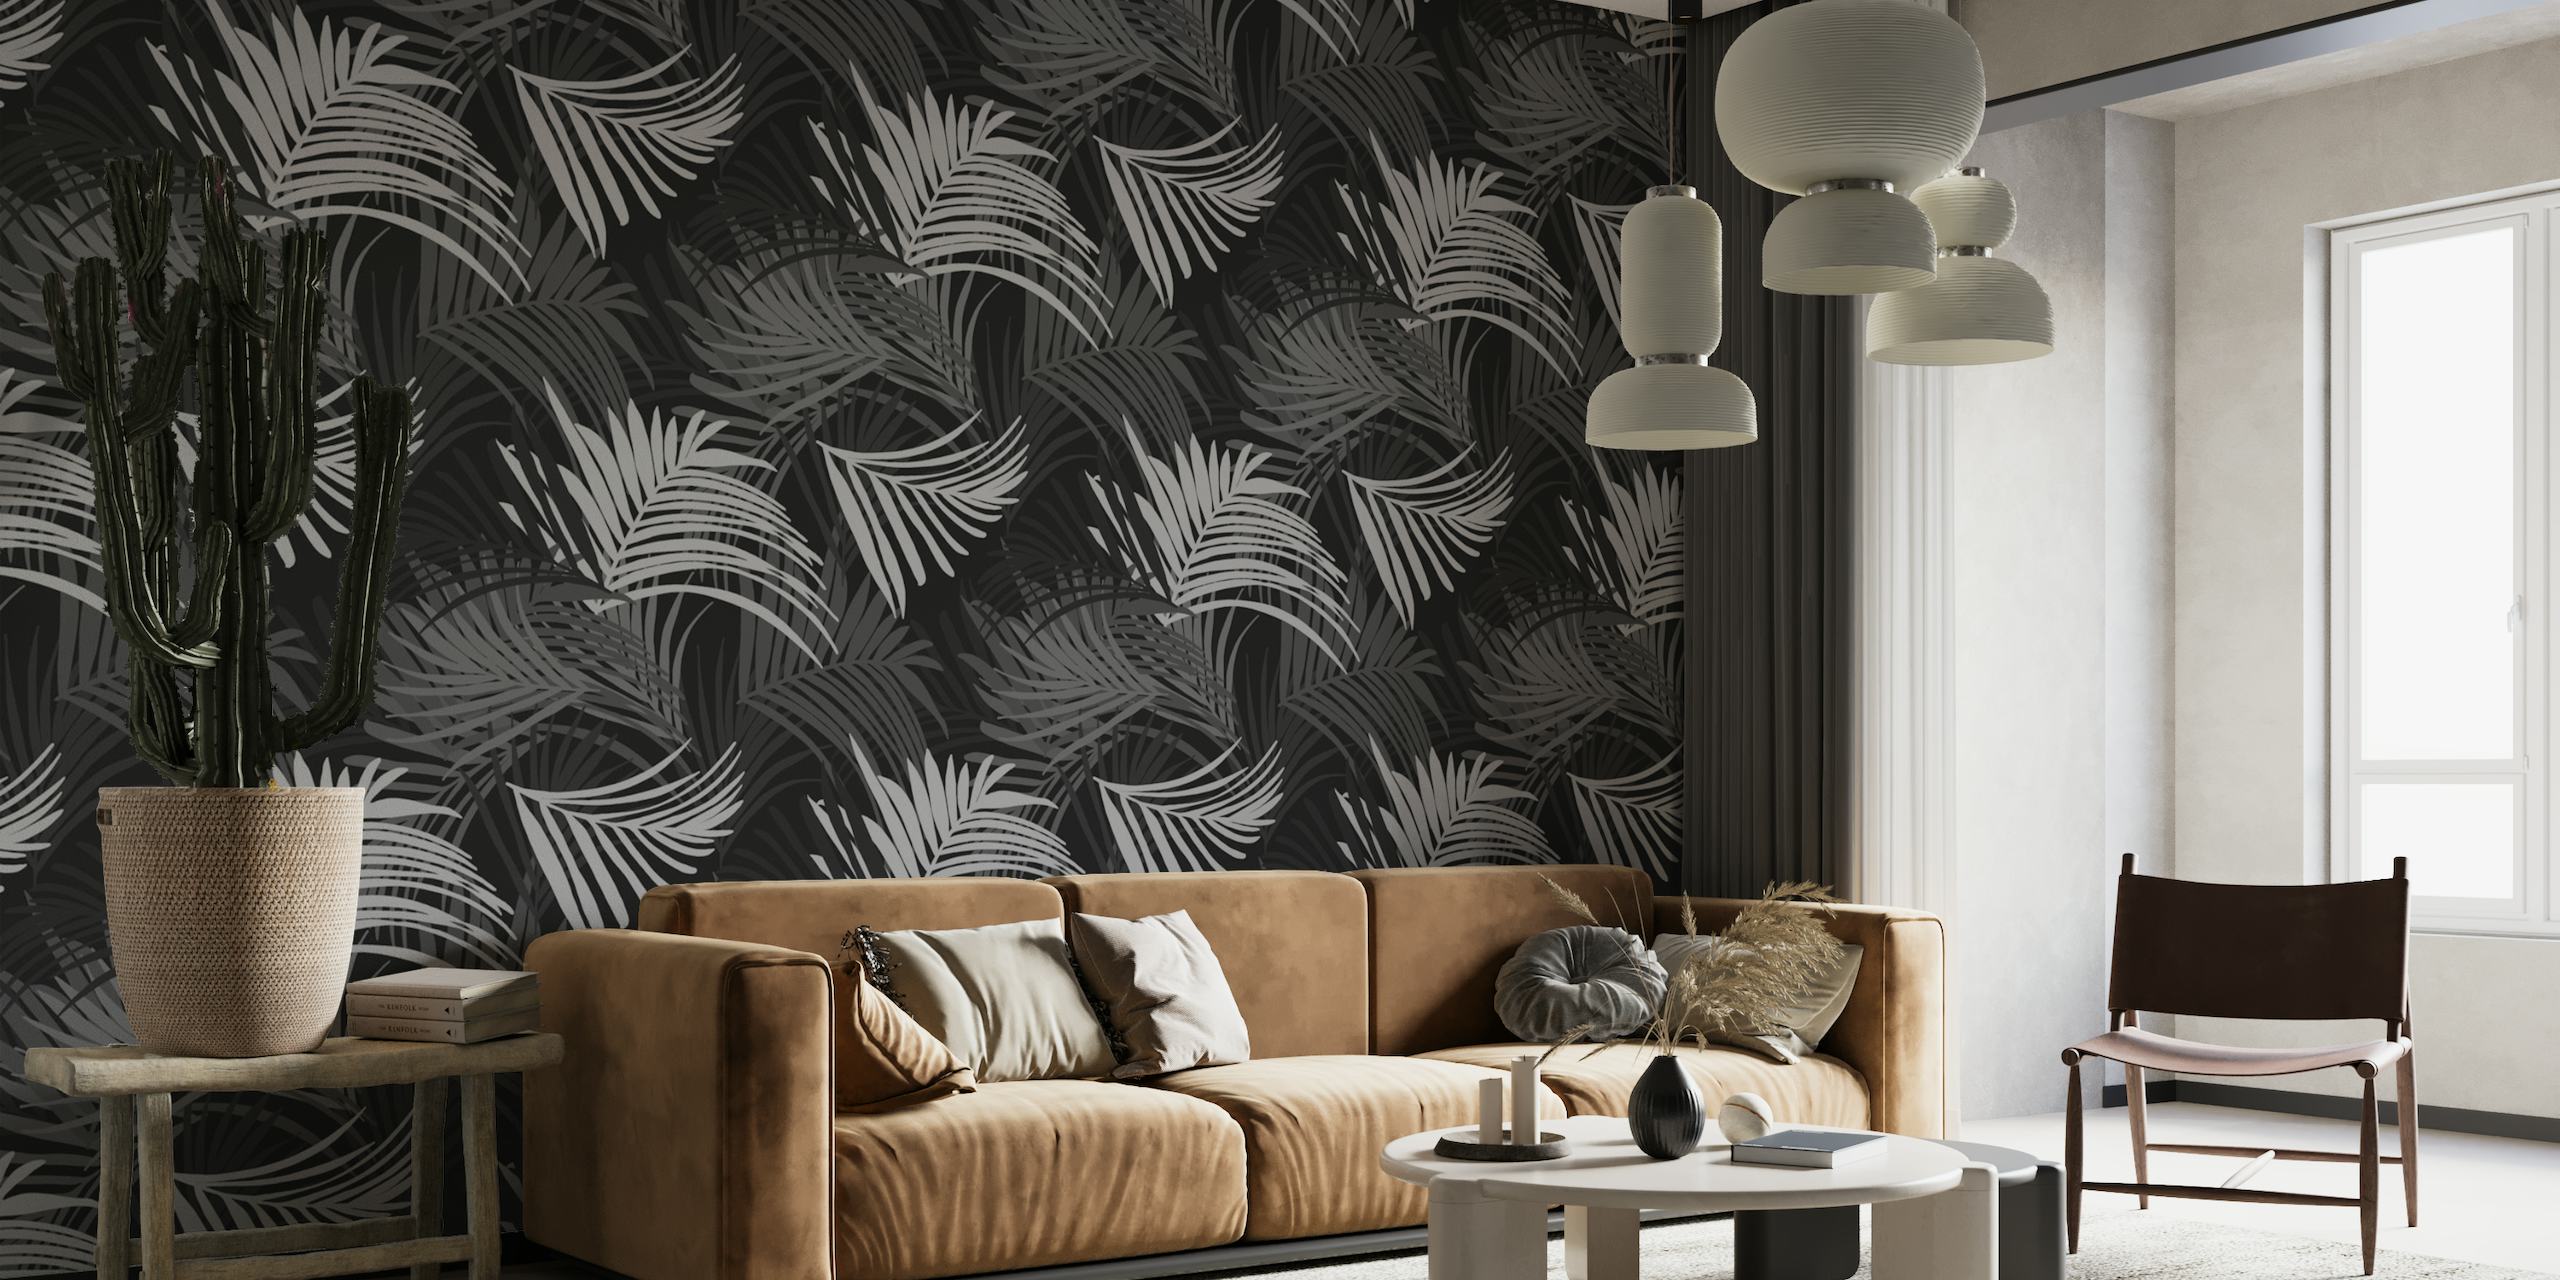 Papier peint mural à motif de feuilles de palmier tropical noir et blanc, parfait pour créer un thème de jungle sereine.